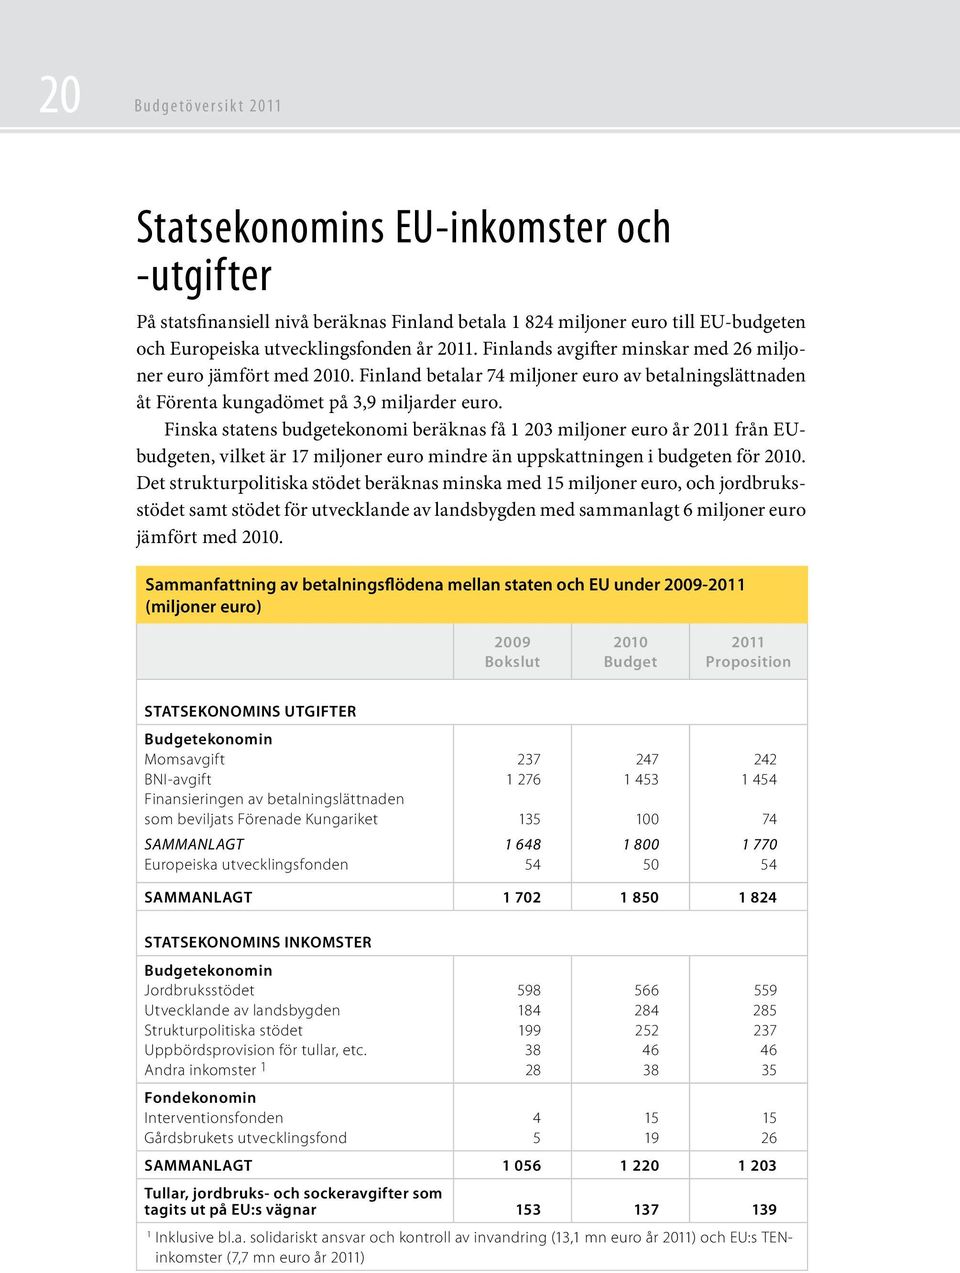 Finska statens budgetekonomi beräknas få 1 203 miljoner euro år 2011 från EUbudgeten, vilket är 17 miljoner euro mindre än uppskattningen i budgeten för 2010.